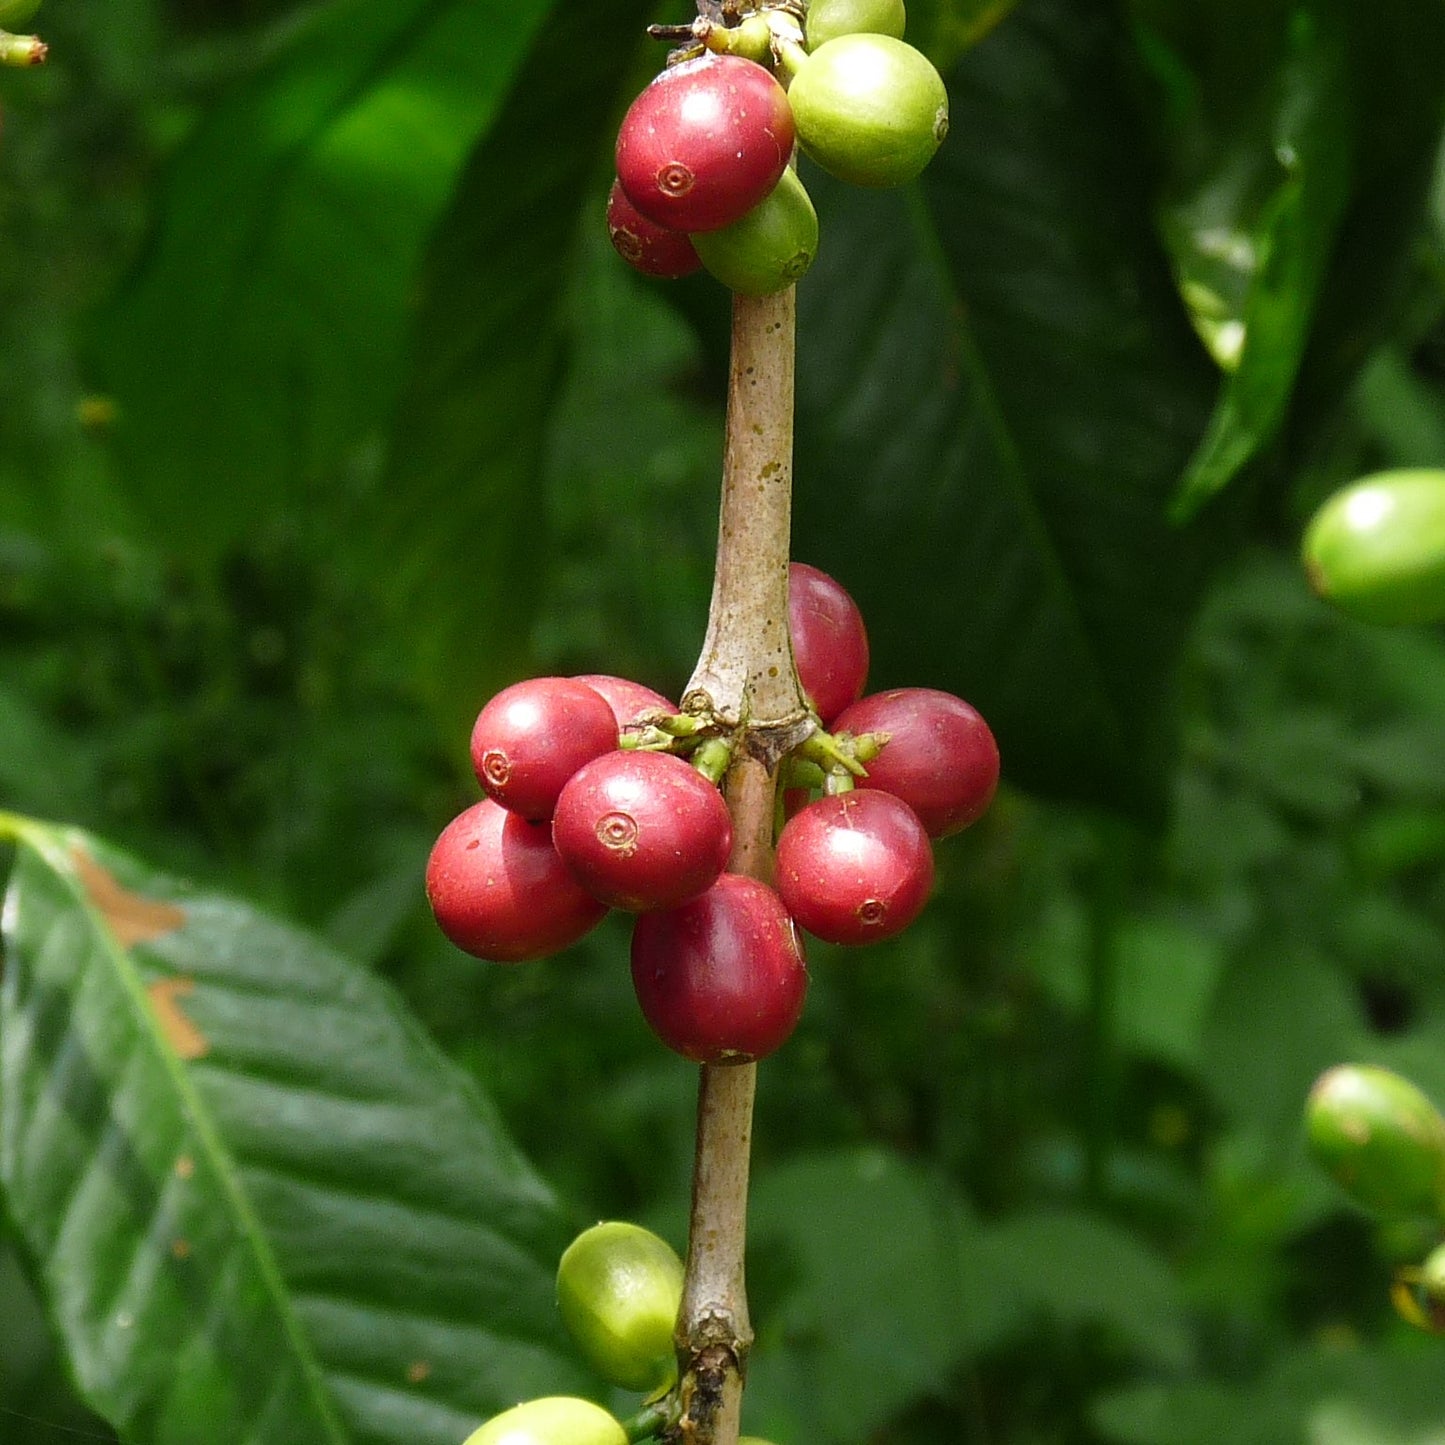 インドネシア ウーマンイサク オランウータンコーヒー（豆）150g　No.968